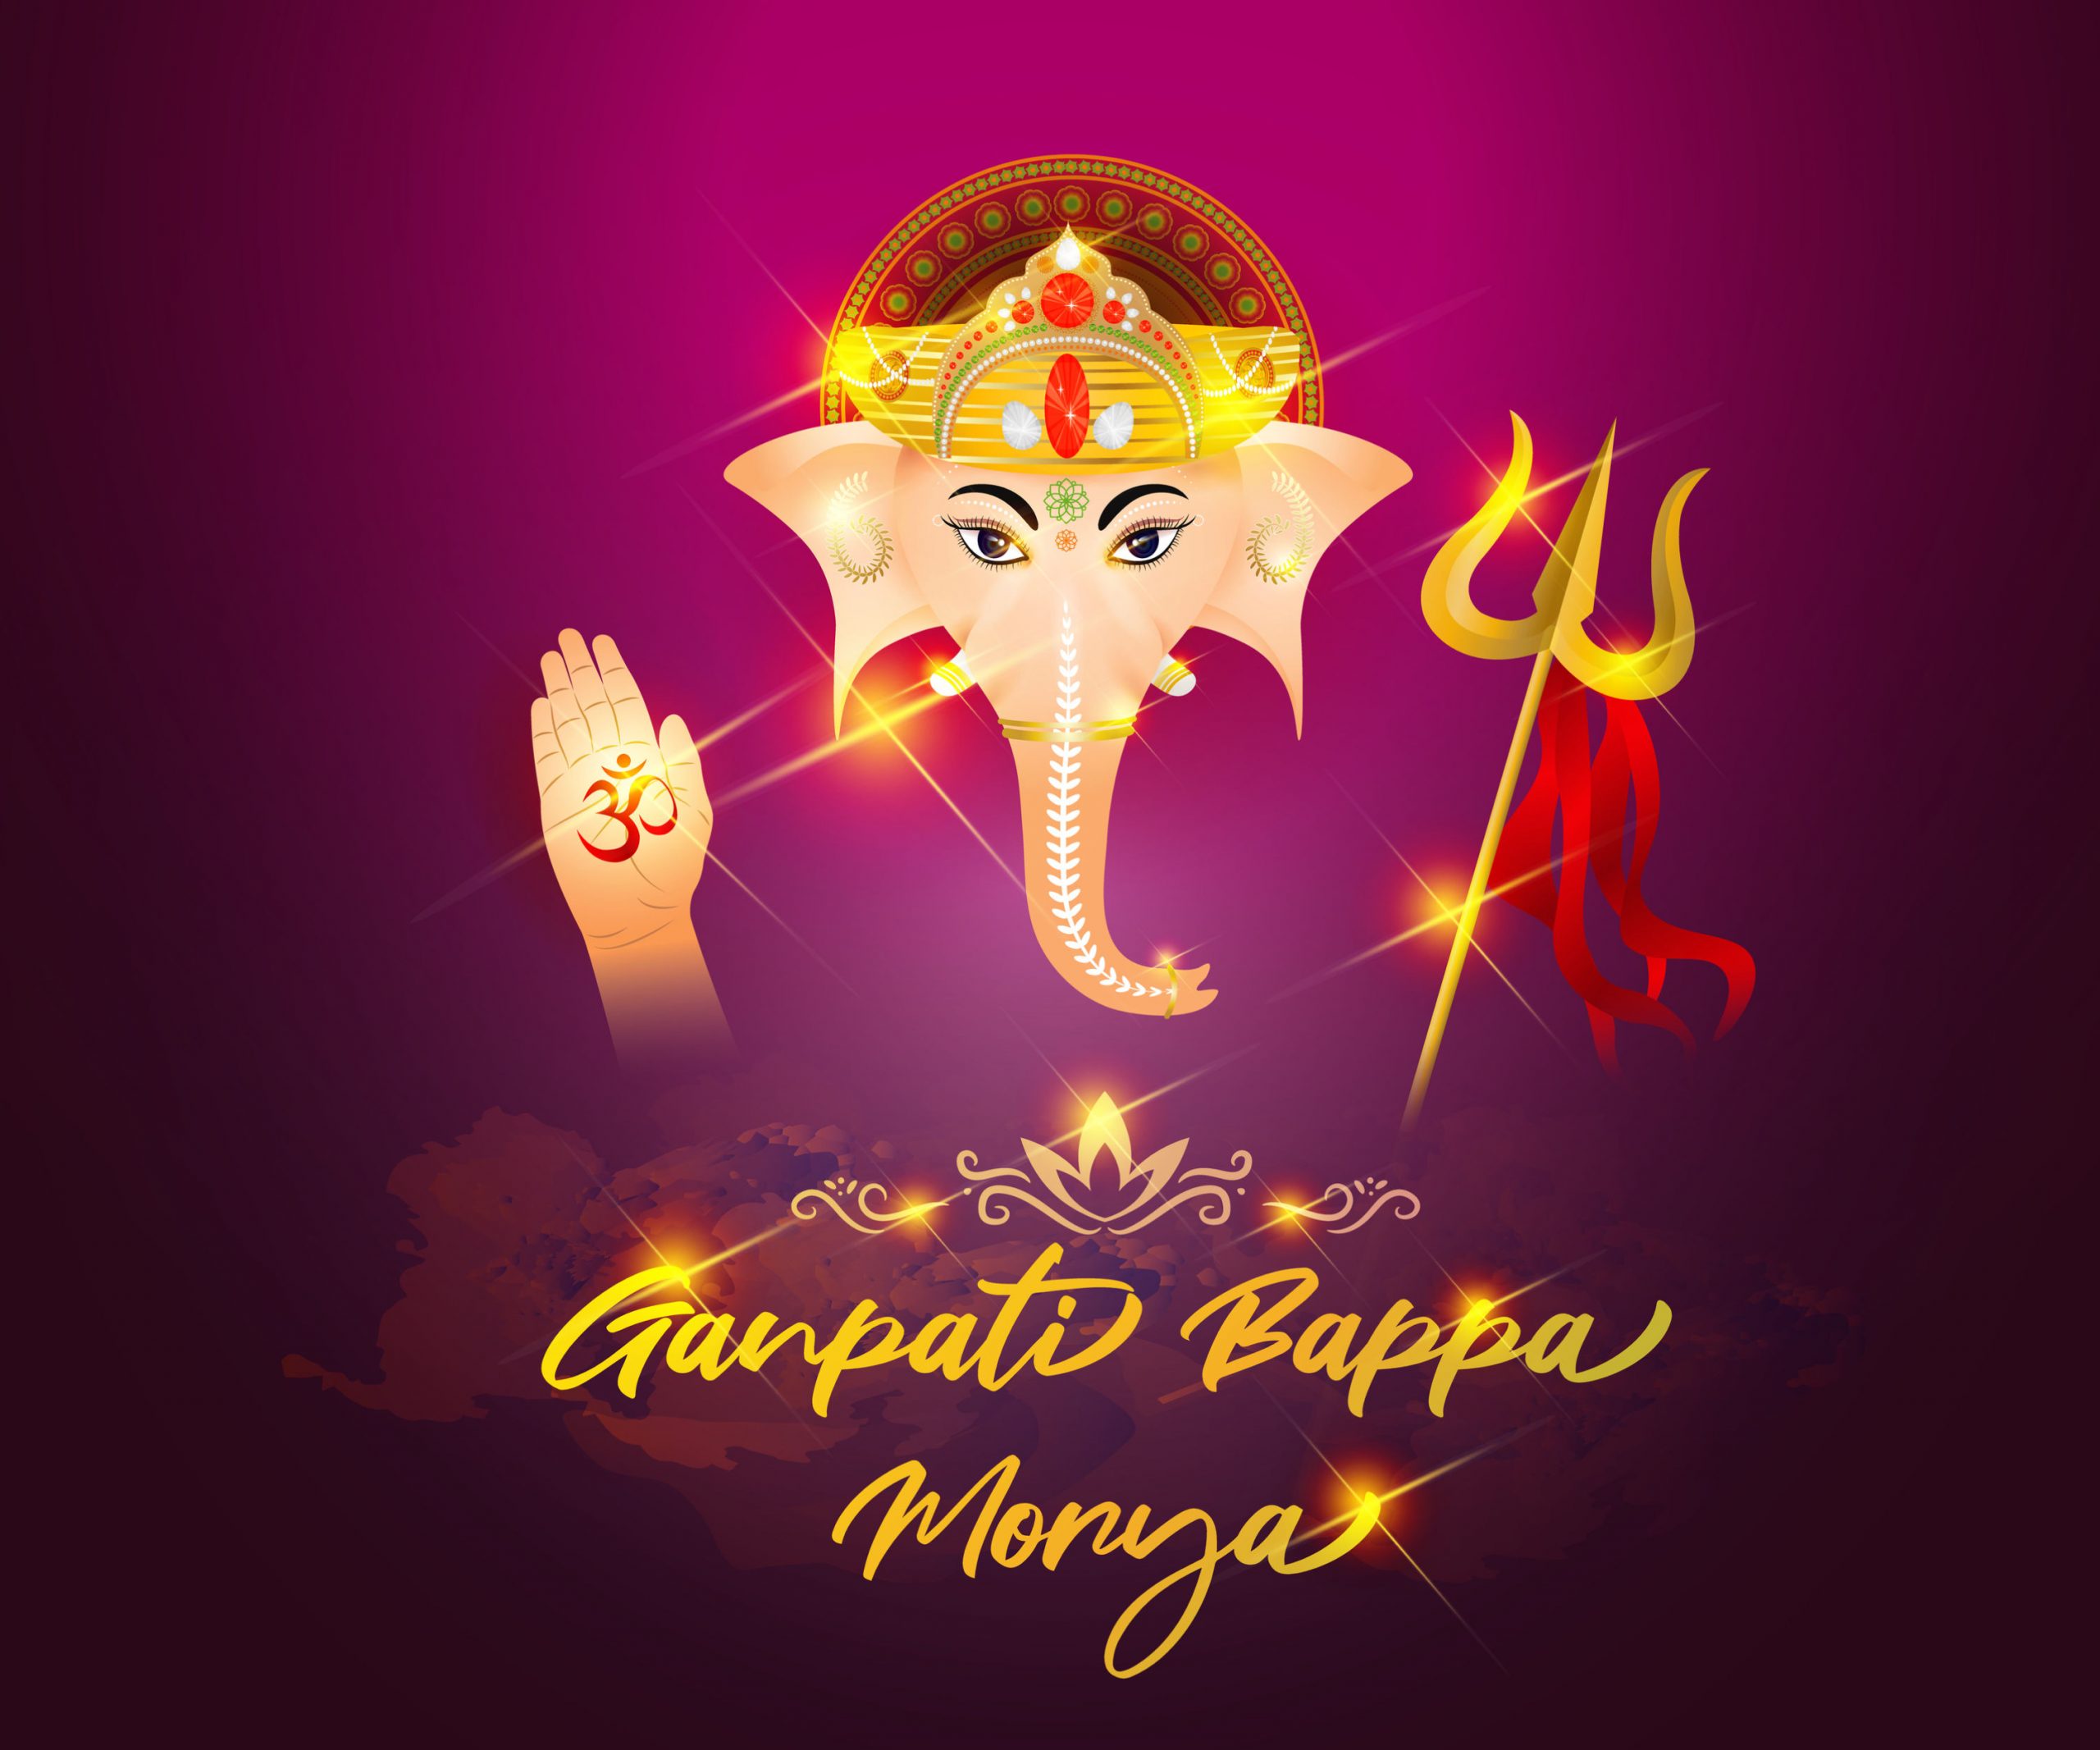 Ganpati bappa morya,Images